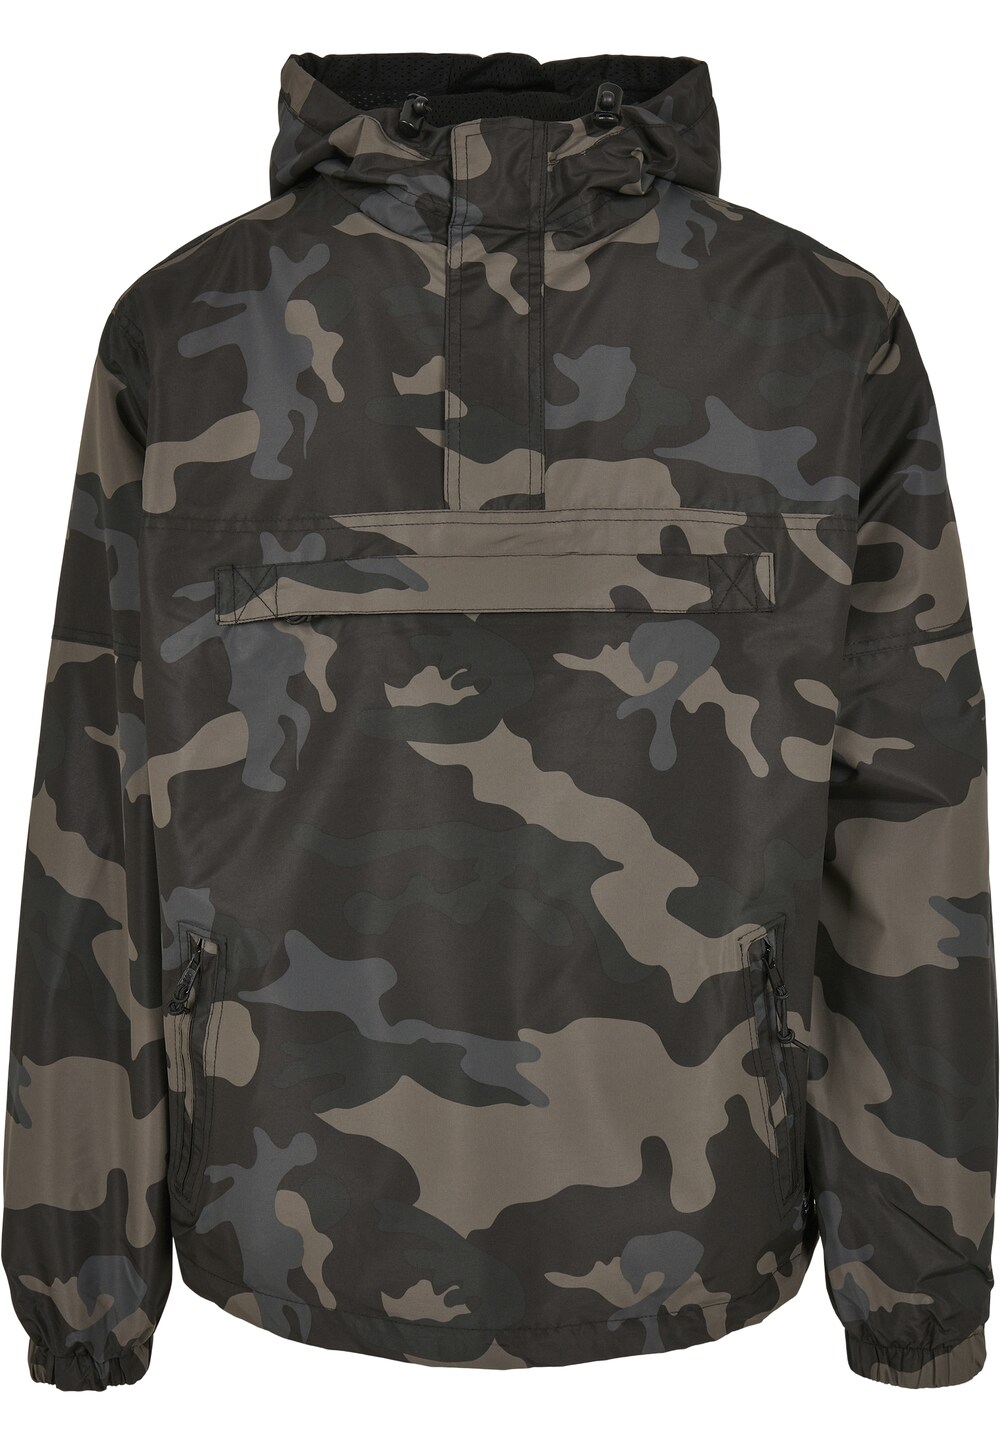 Межсезонная куртка Brandit, базальтово-серый/серый/светло-серый фотографии